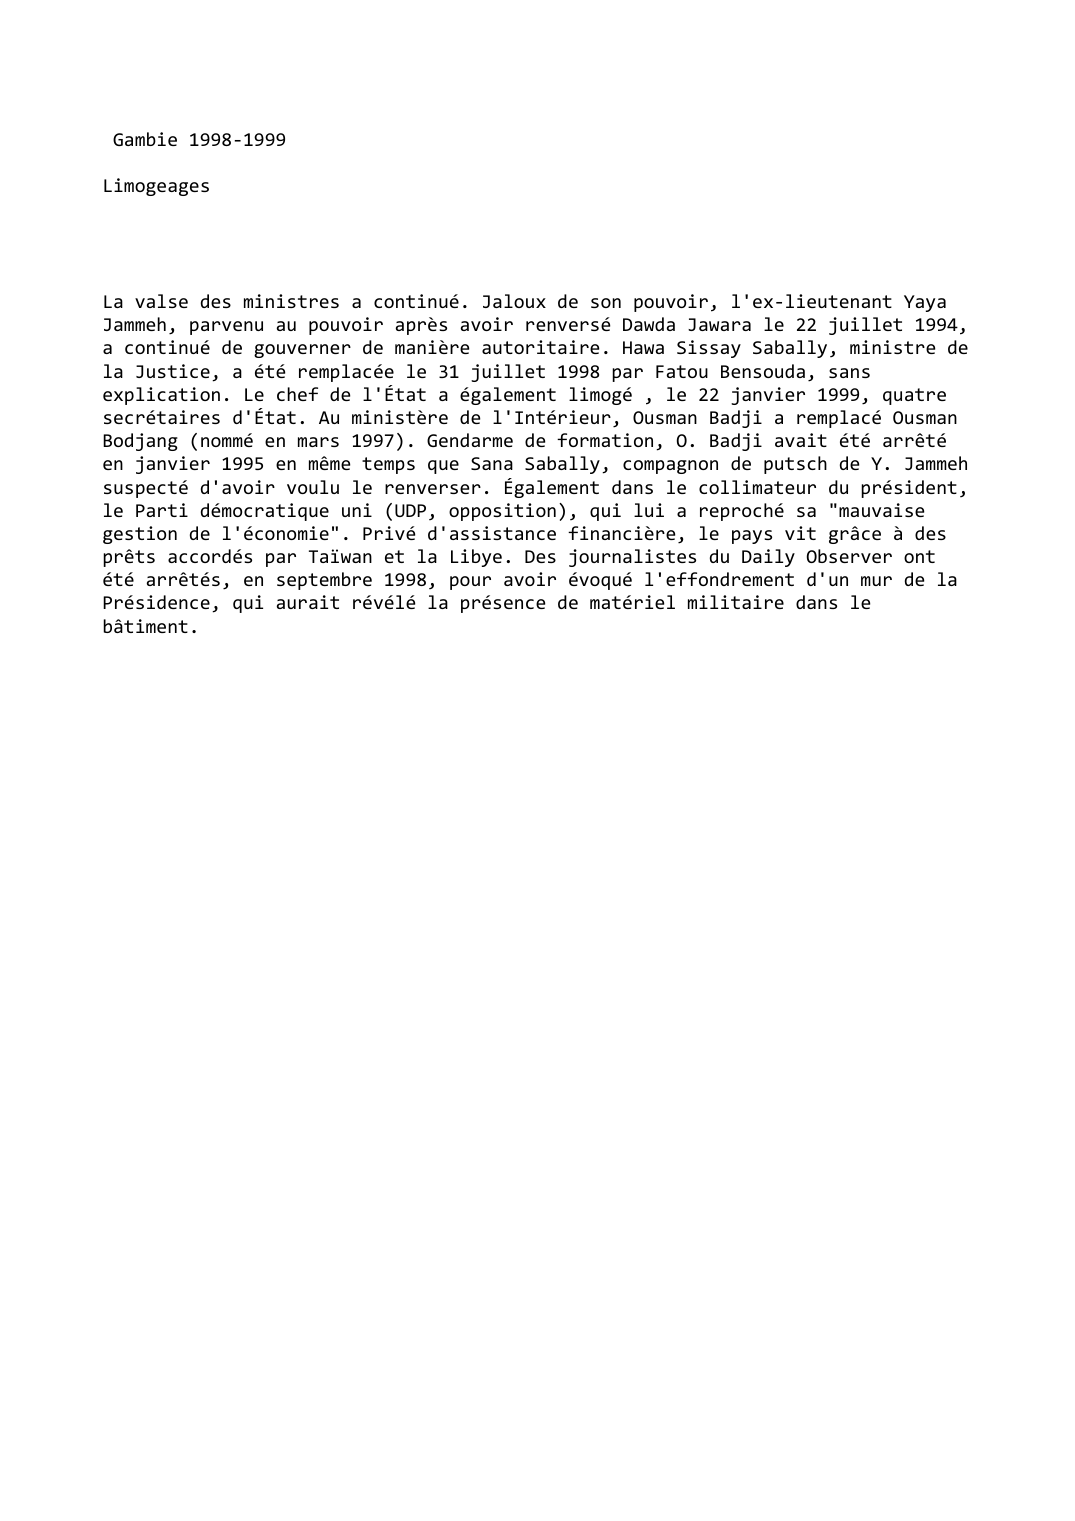 Prévisualisation du document Gambie (1998-1999): Limogeages